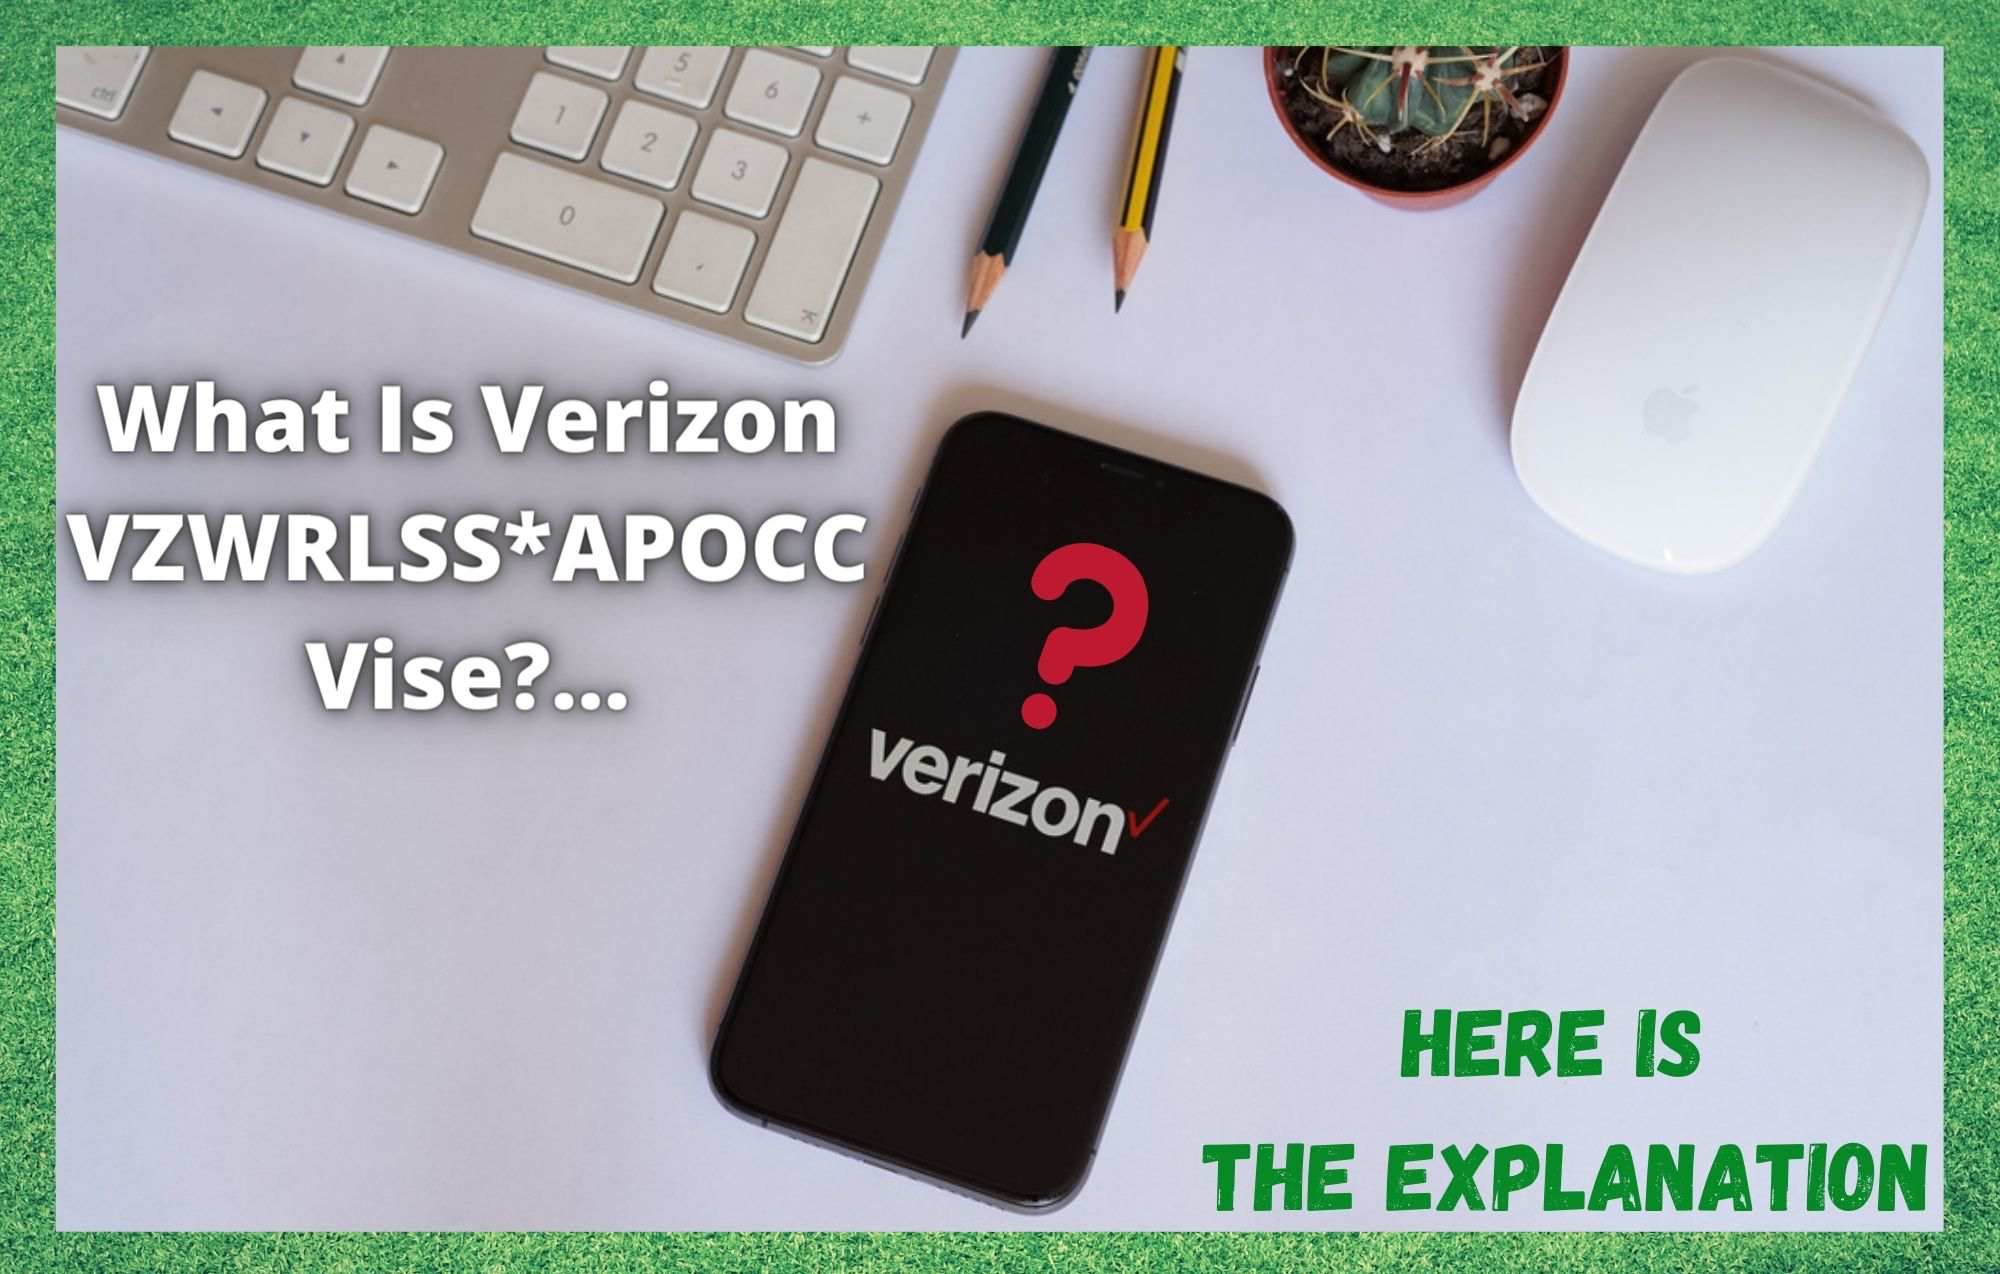 Verizon VZWRLSS* APOCC Vise څه شی دی؟